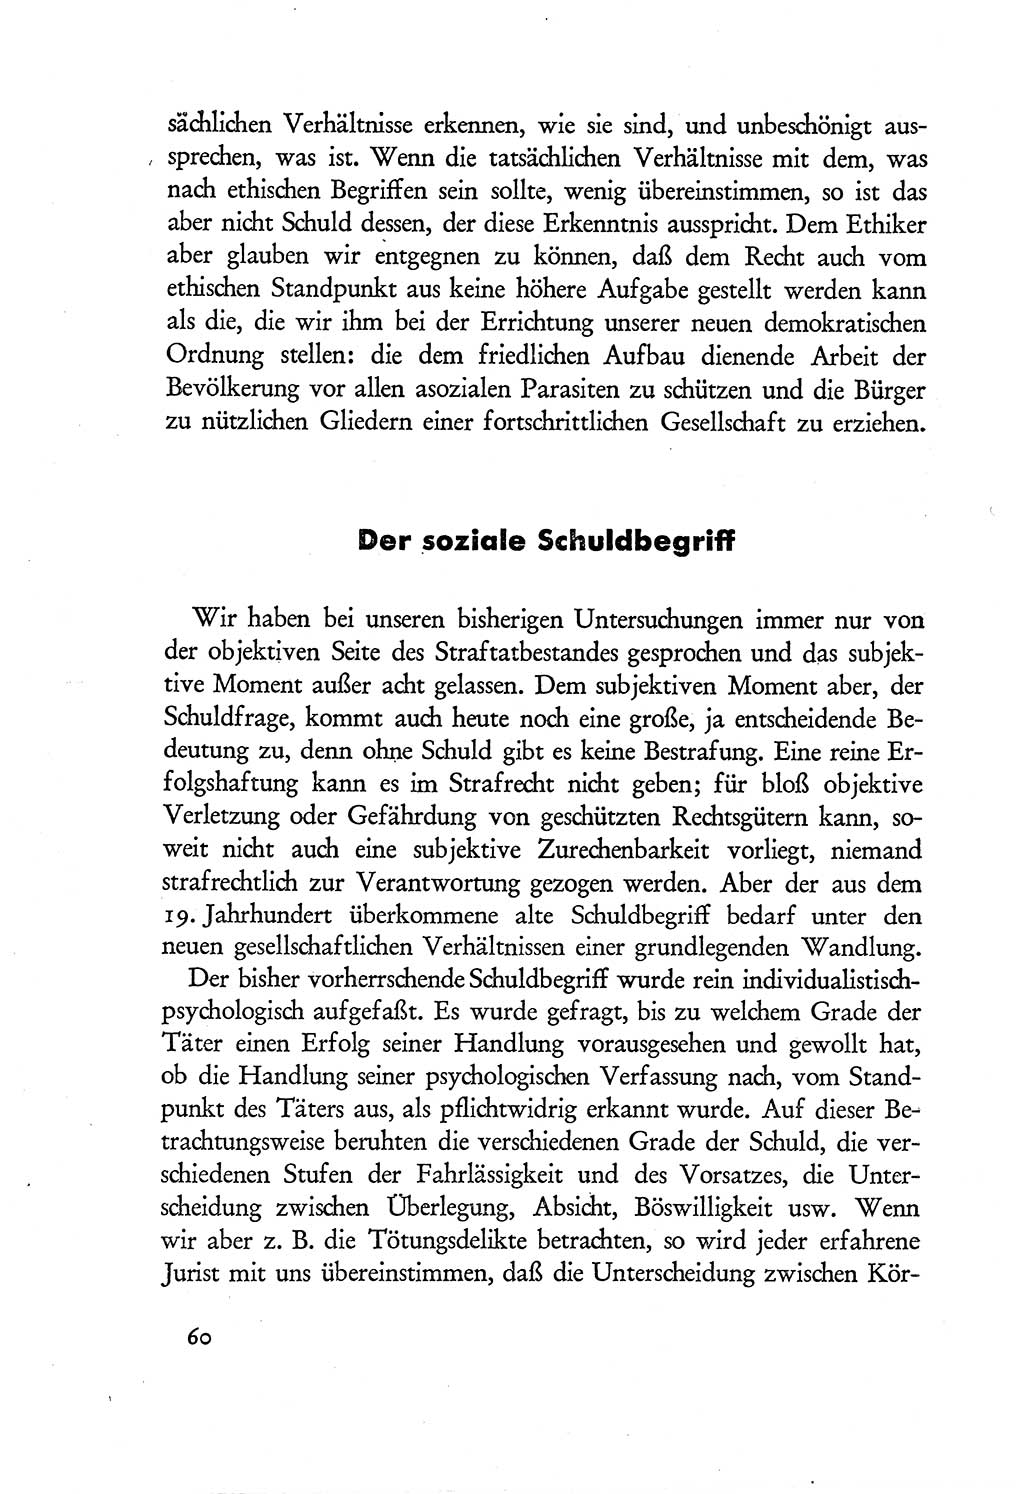 Probleme eines demokratischen Strafrechts [Sowjetische Besatzungszone (SBZ) Deutschlands] 1949, Seite 60 (Probl. Strafr. SBZ Dtl. 1949, S. 60)